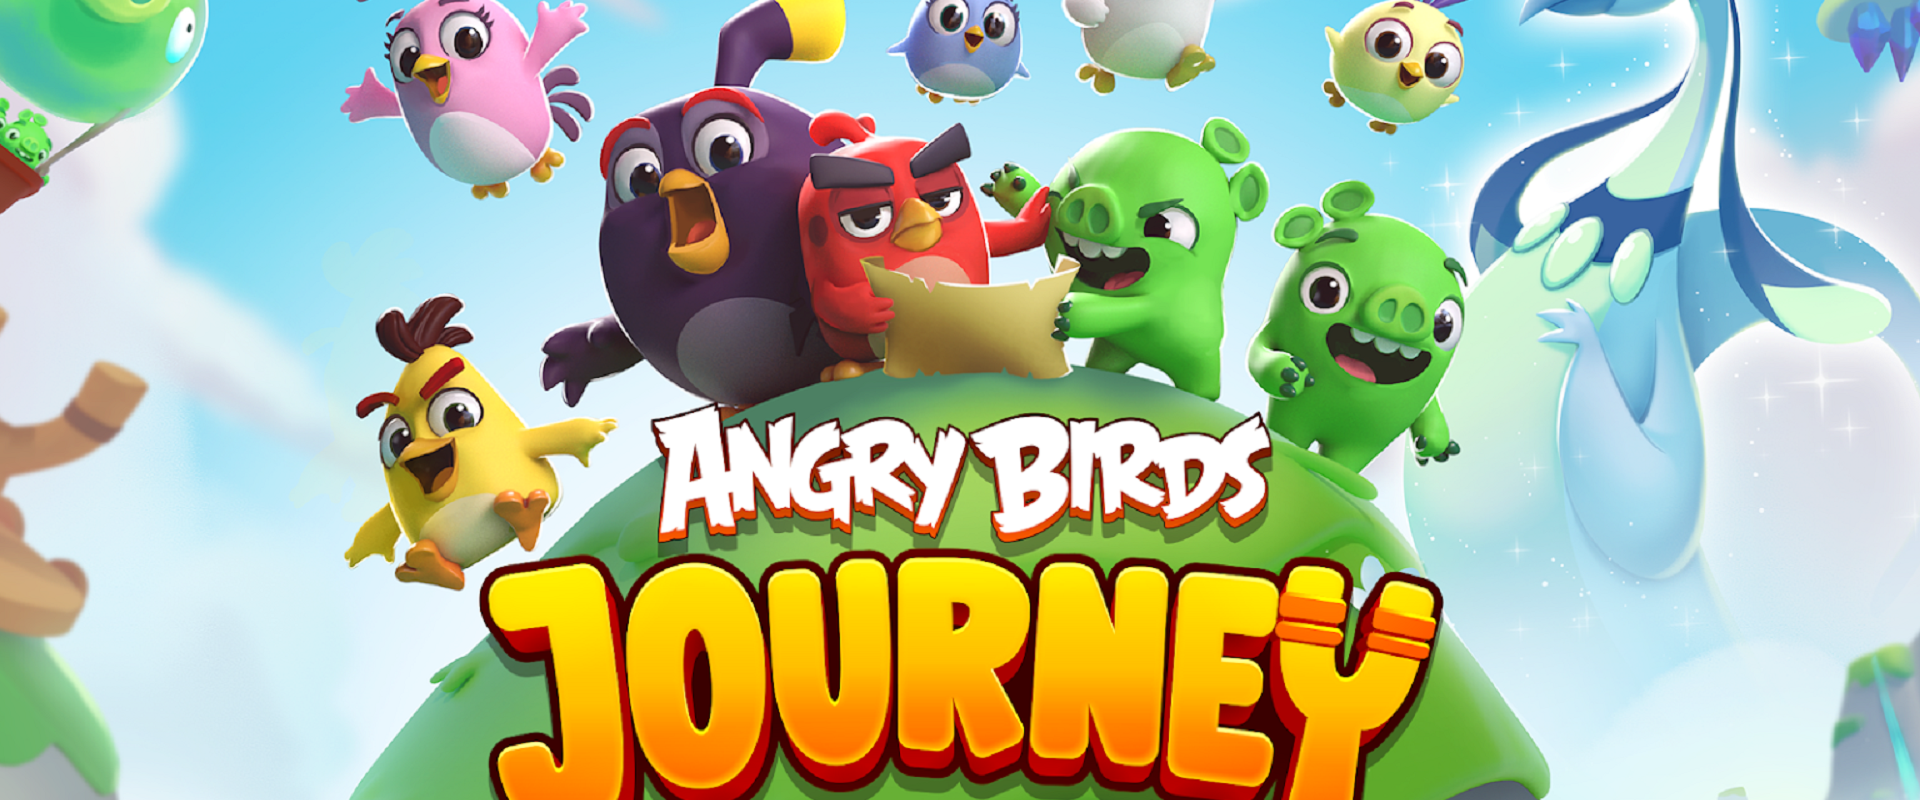 ดาวน์โหลดและเล่น Angry Birds Journey บน PC ด้วย NoxPlayer โปรแกรมจำลองฟรี